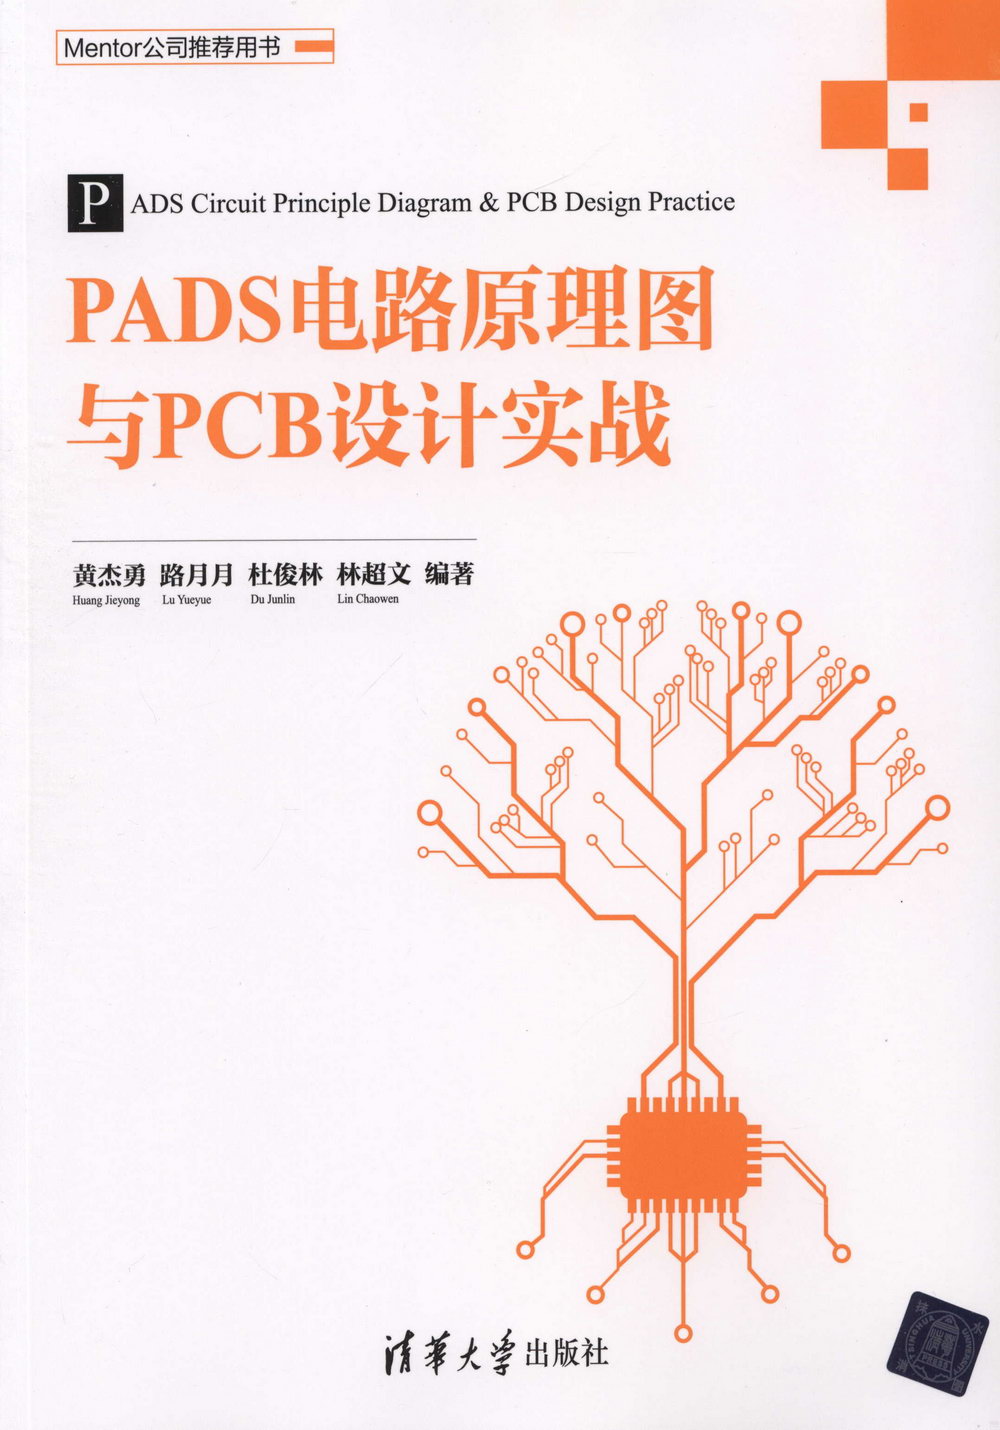 PADS電路原理圖與PCB設計實戰